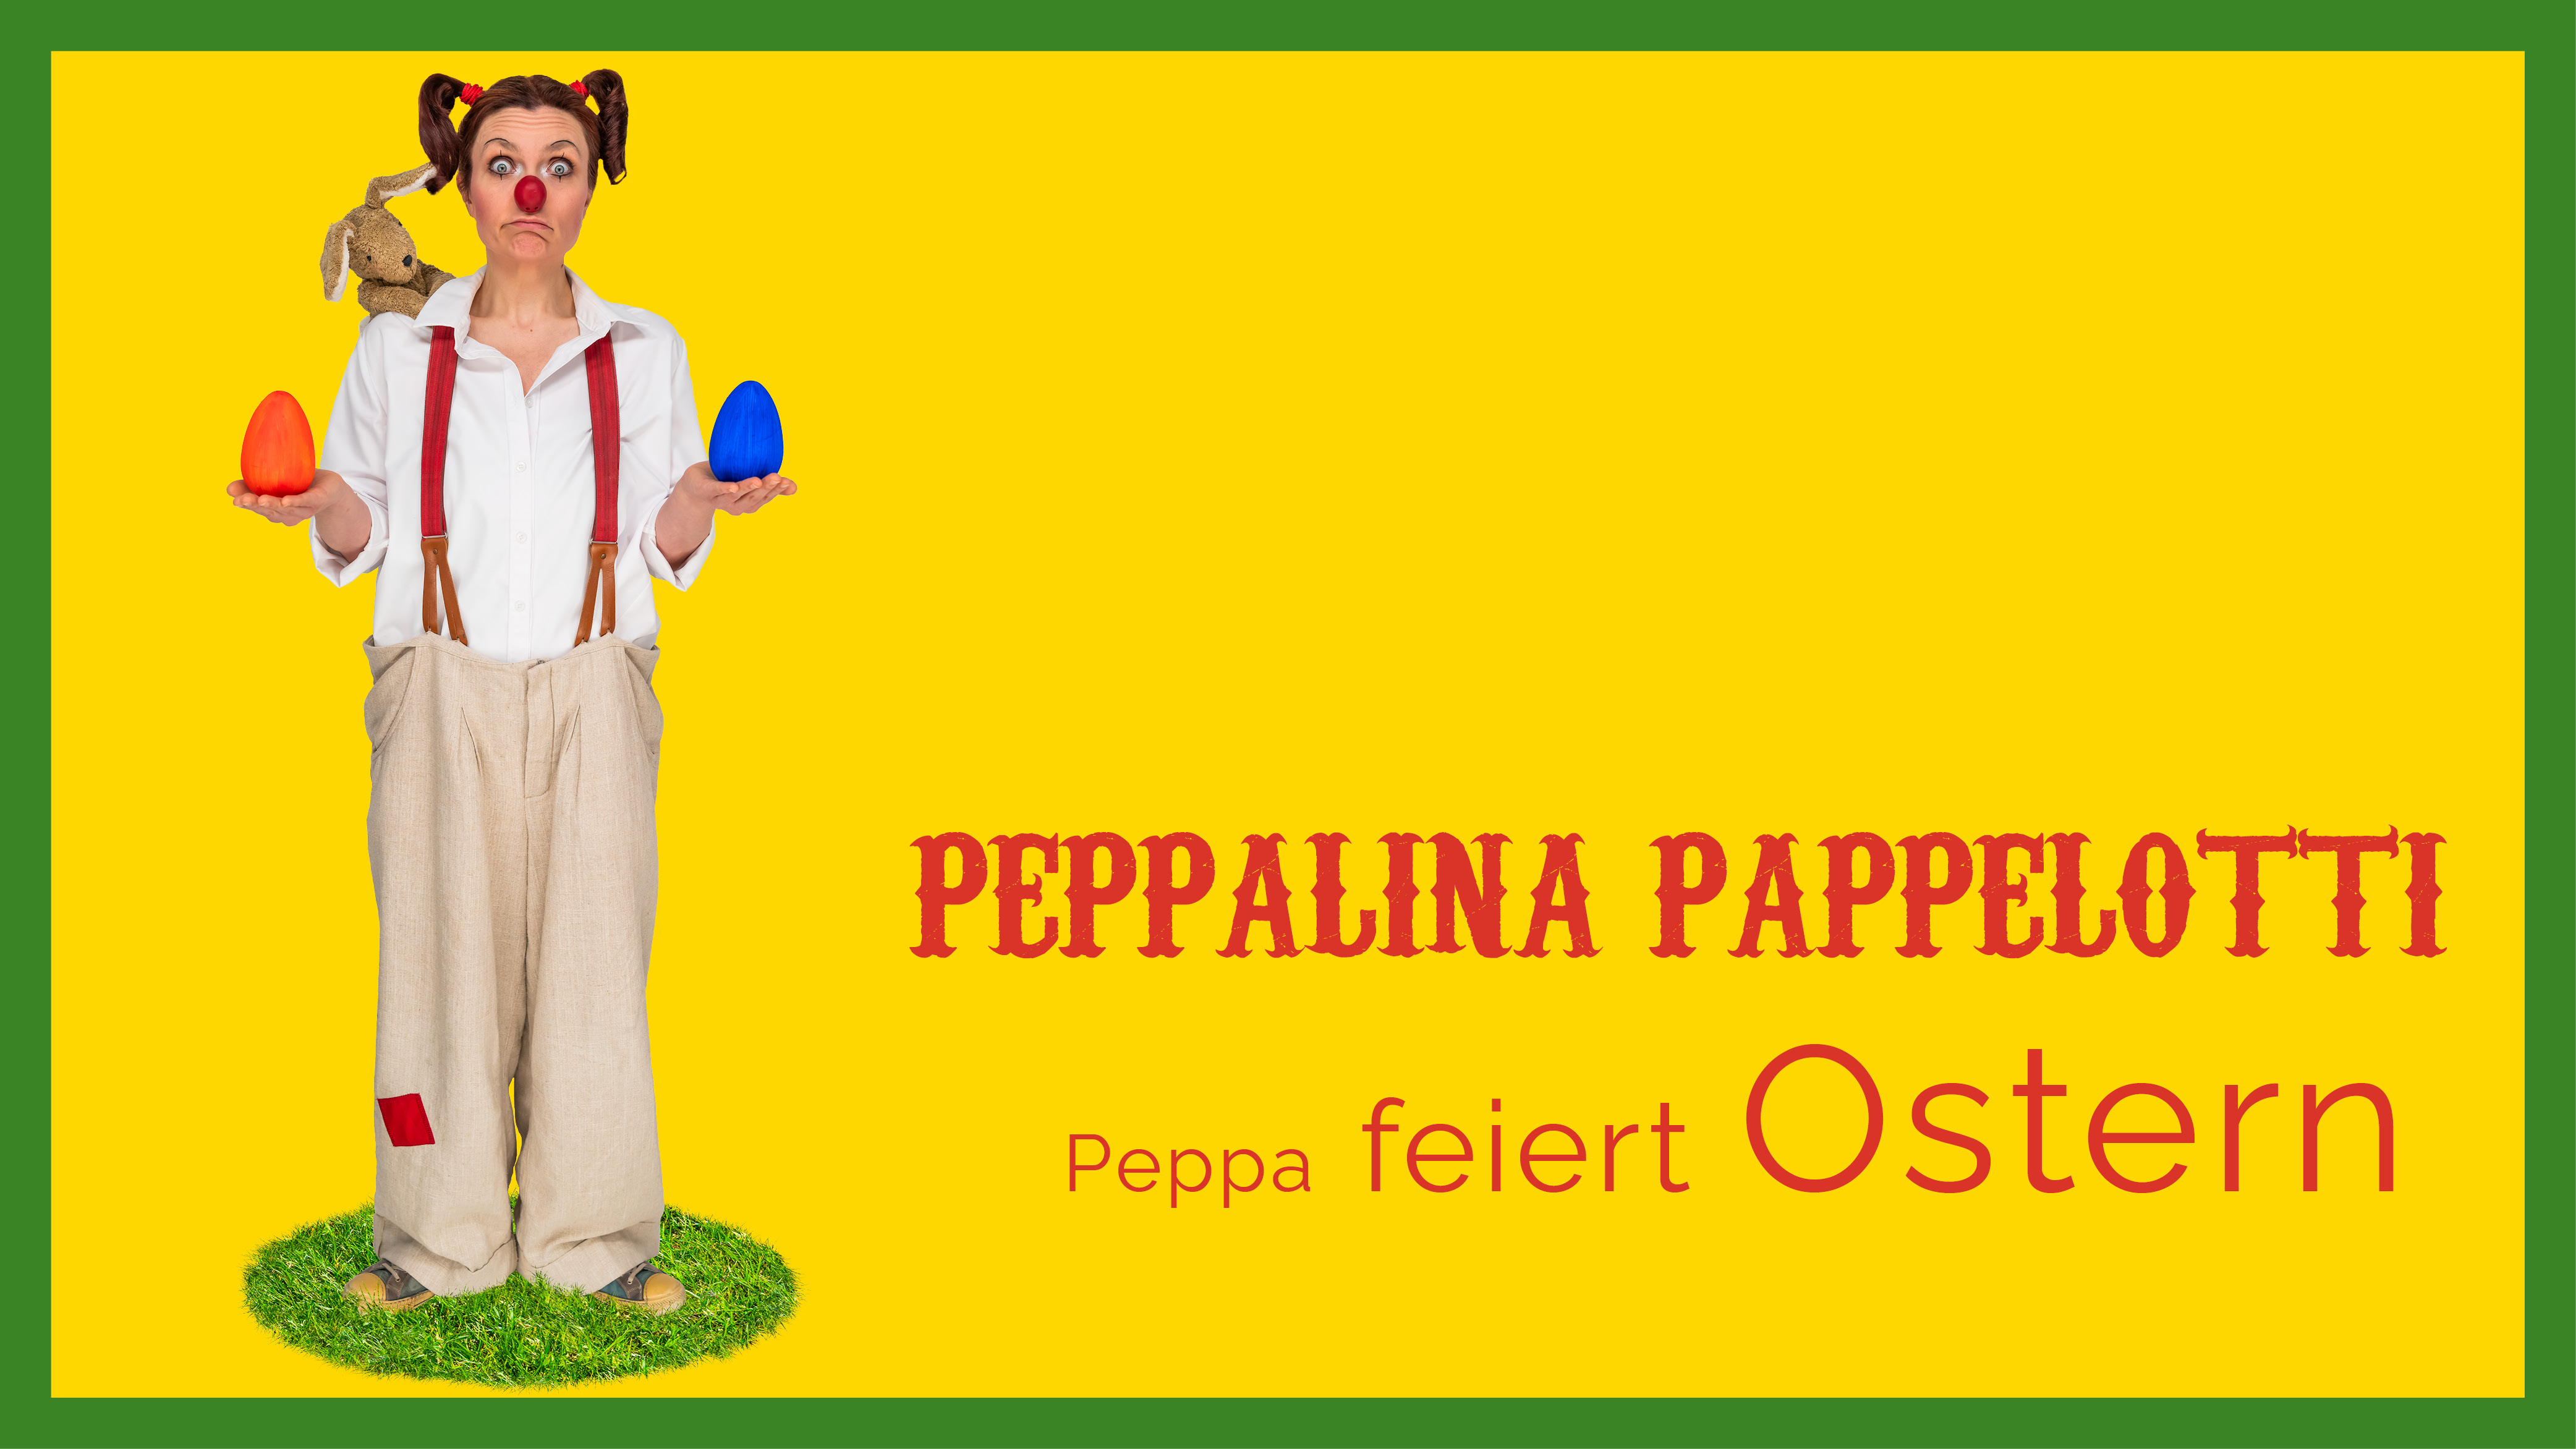 Peppa feiert Ostern - Flyer